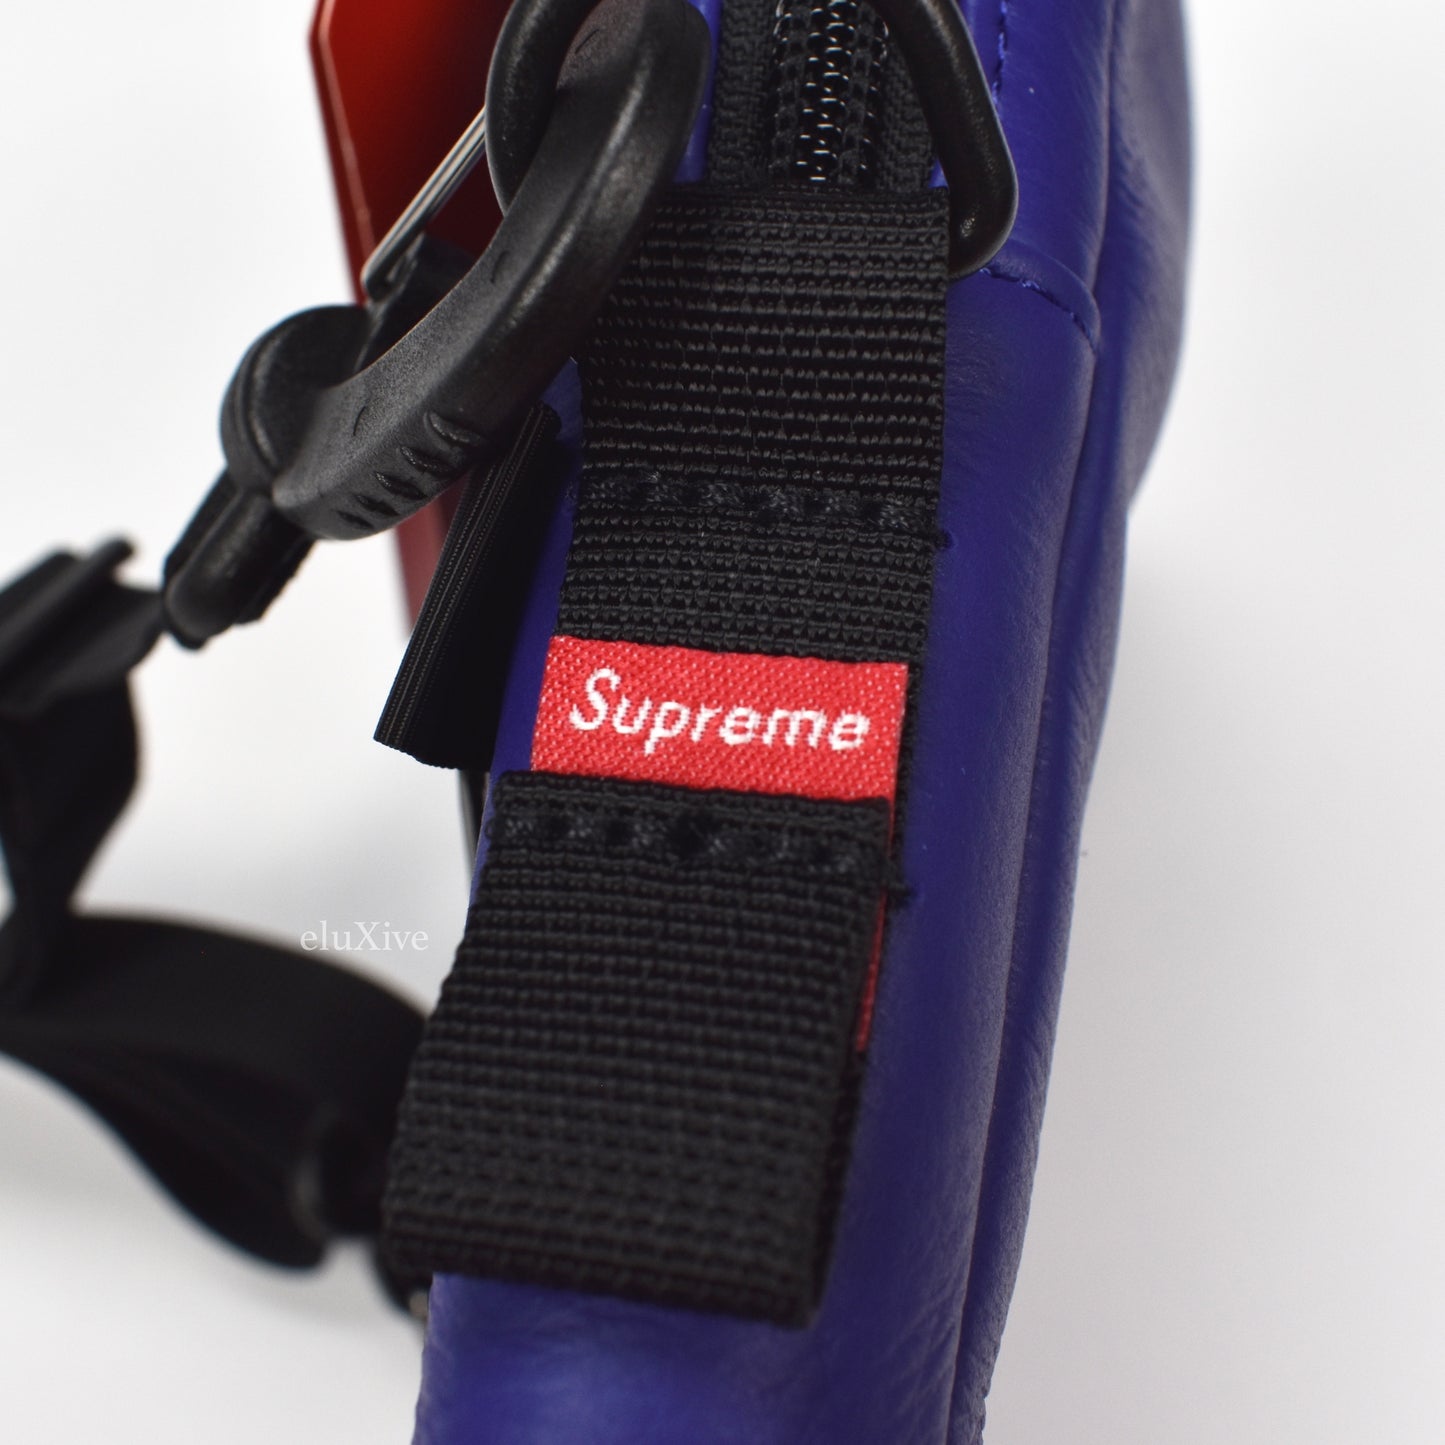 Supreme x The North Face - Blue Leather Shoulder Bag